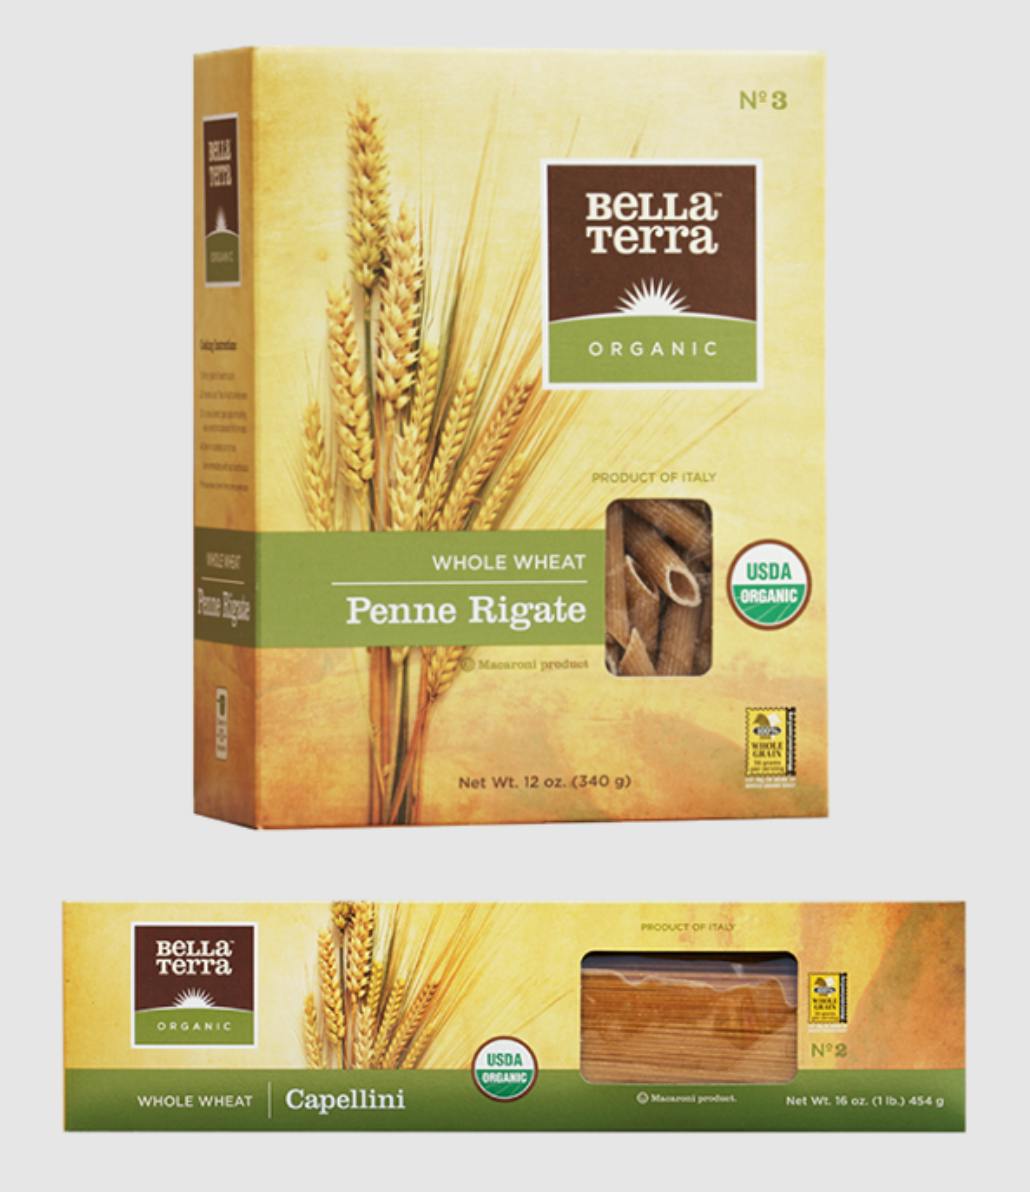 New Bella Terra packaging